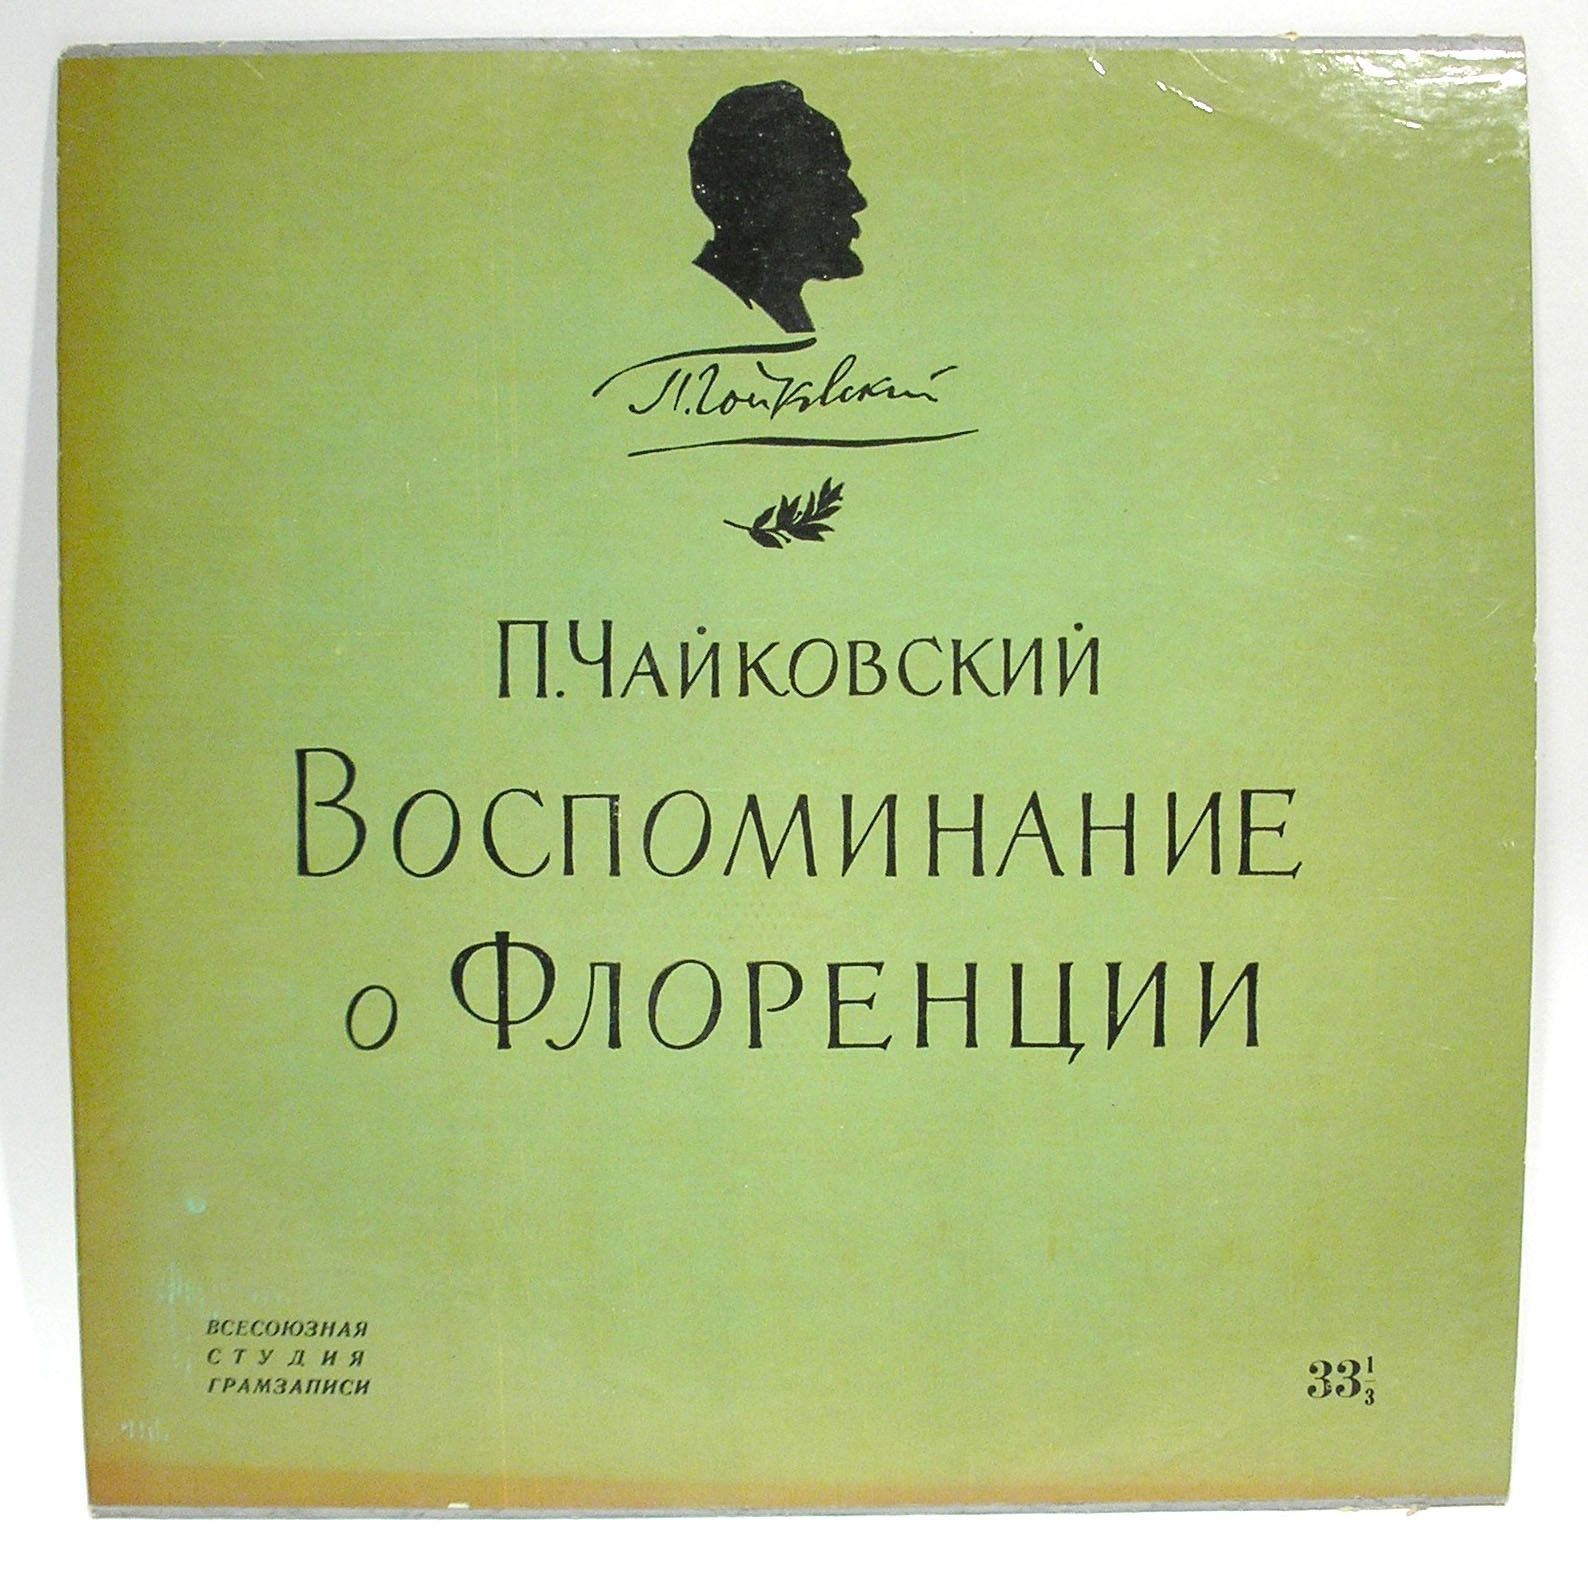 П. Чайковский: Воспоминание о Флоренции